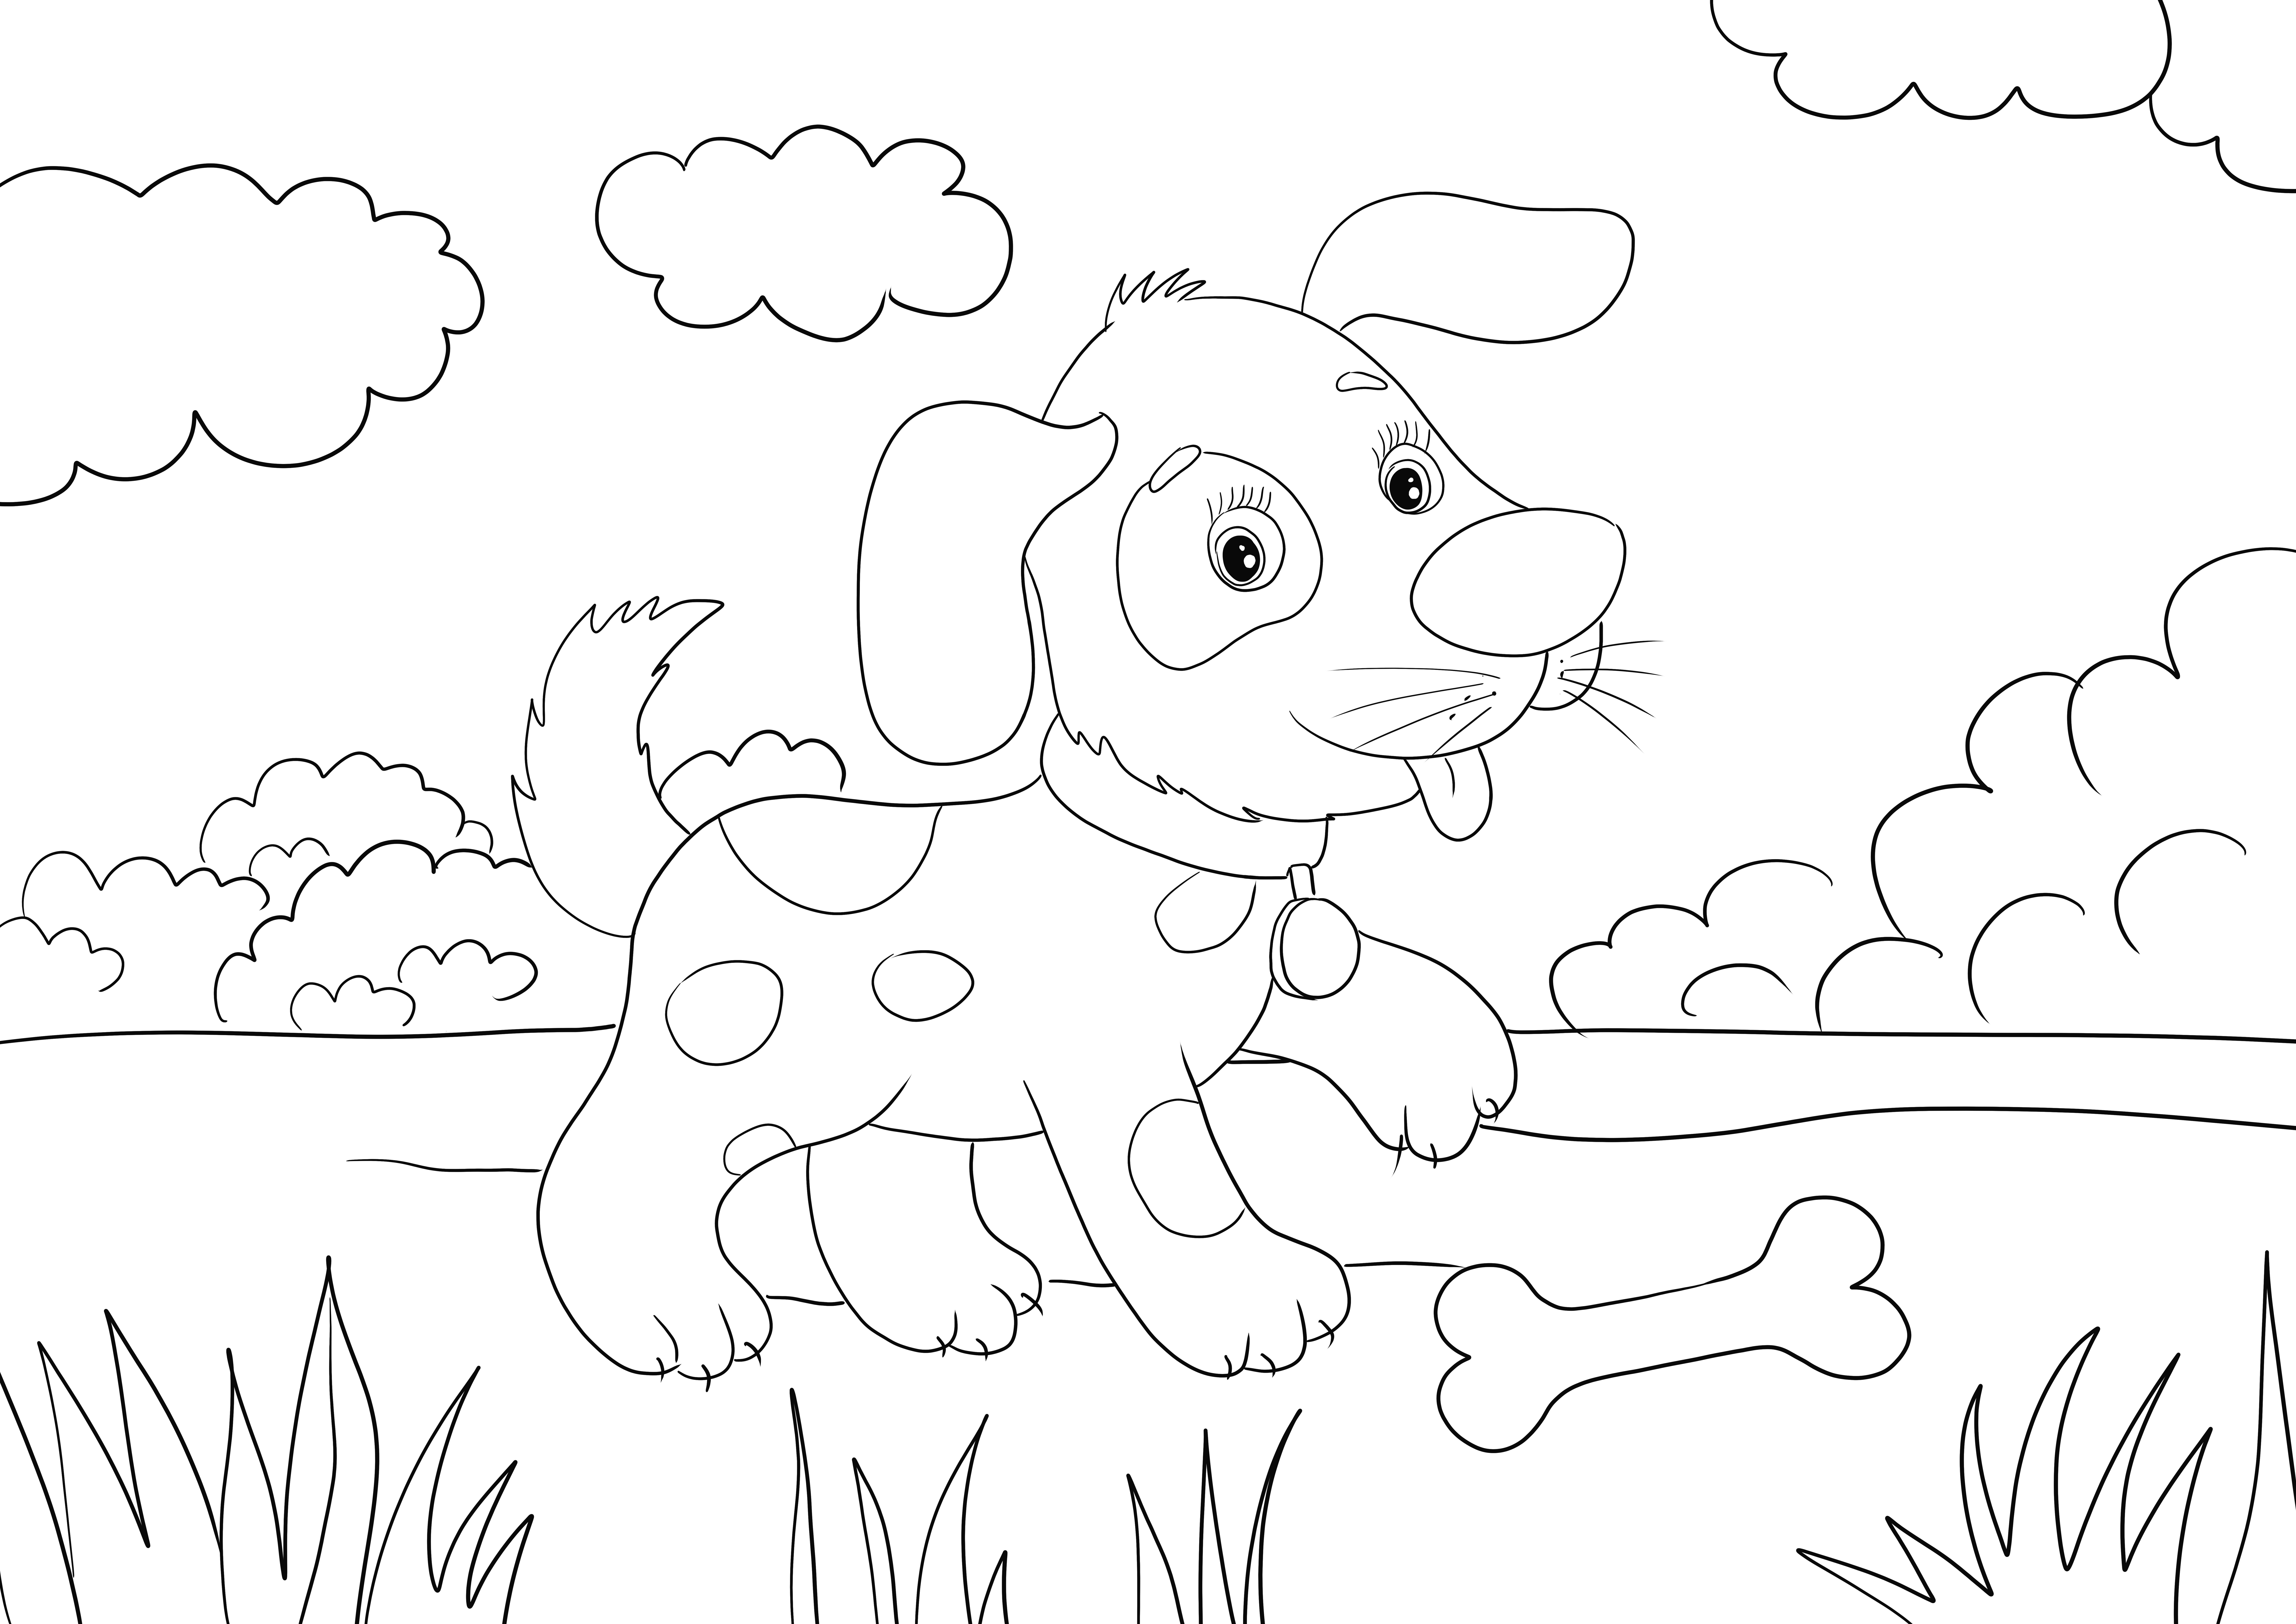 Çocuklar için kemiksiz yazdırılabilir bir boyama sayfasını yalayan sevimli küçük köpek